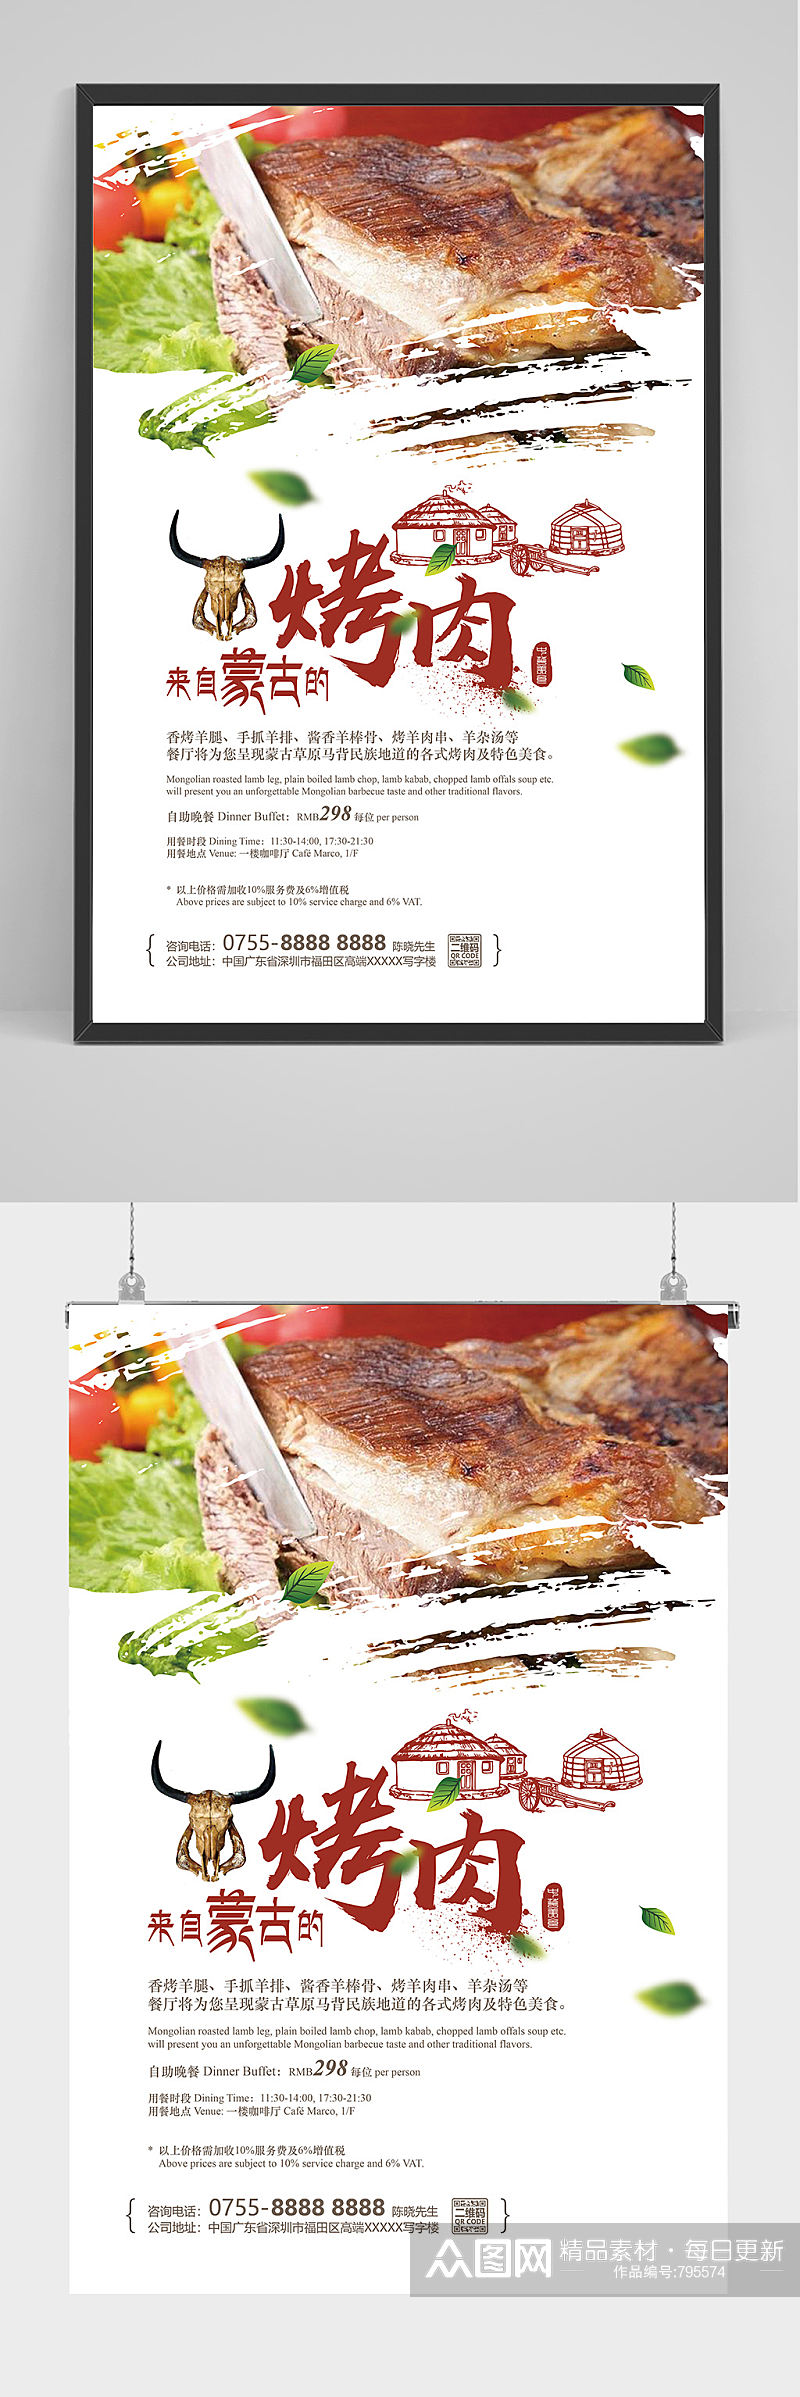 蒙古烤肉海报设计素材